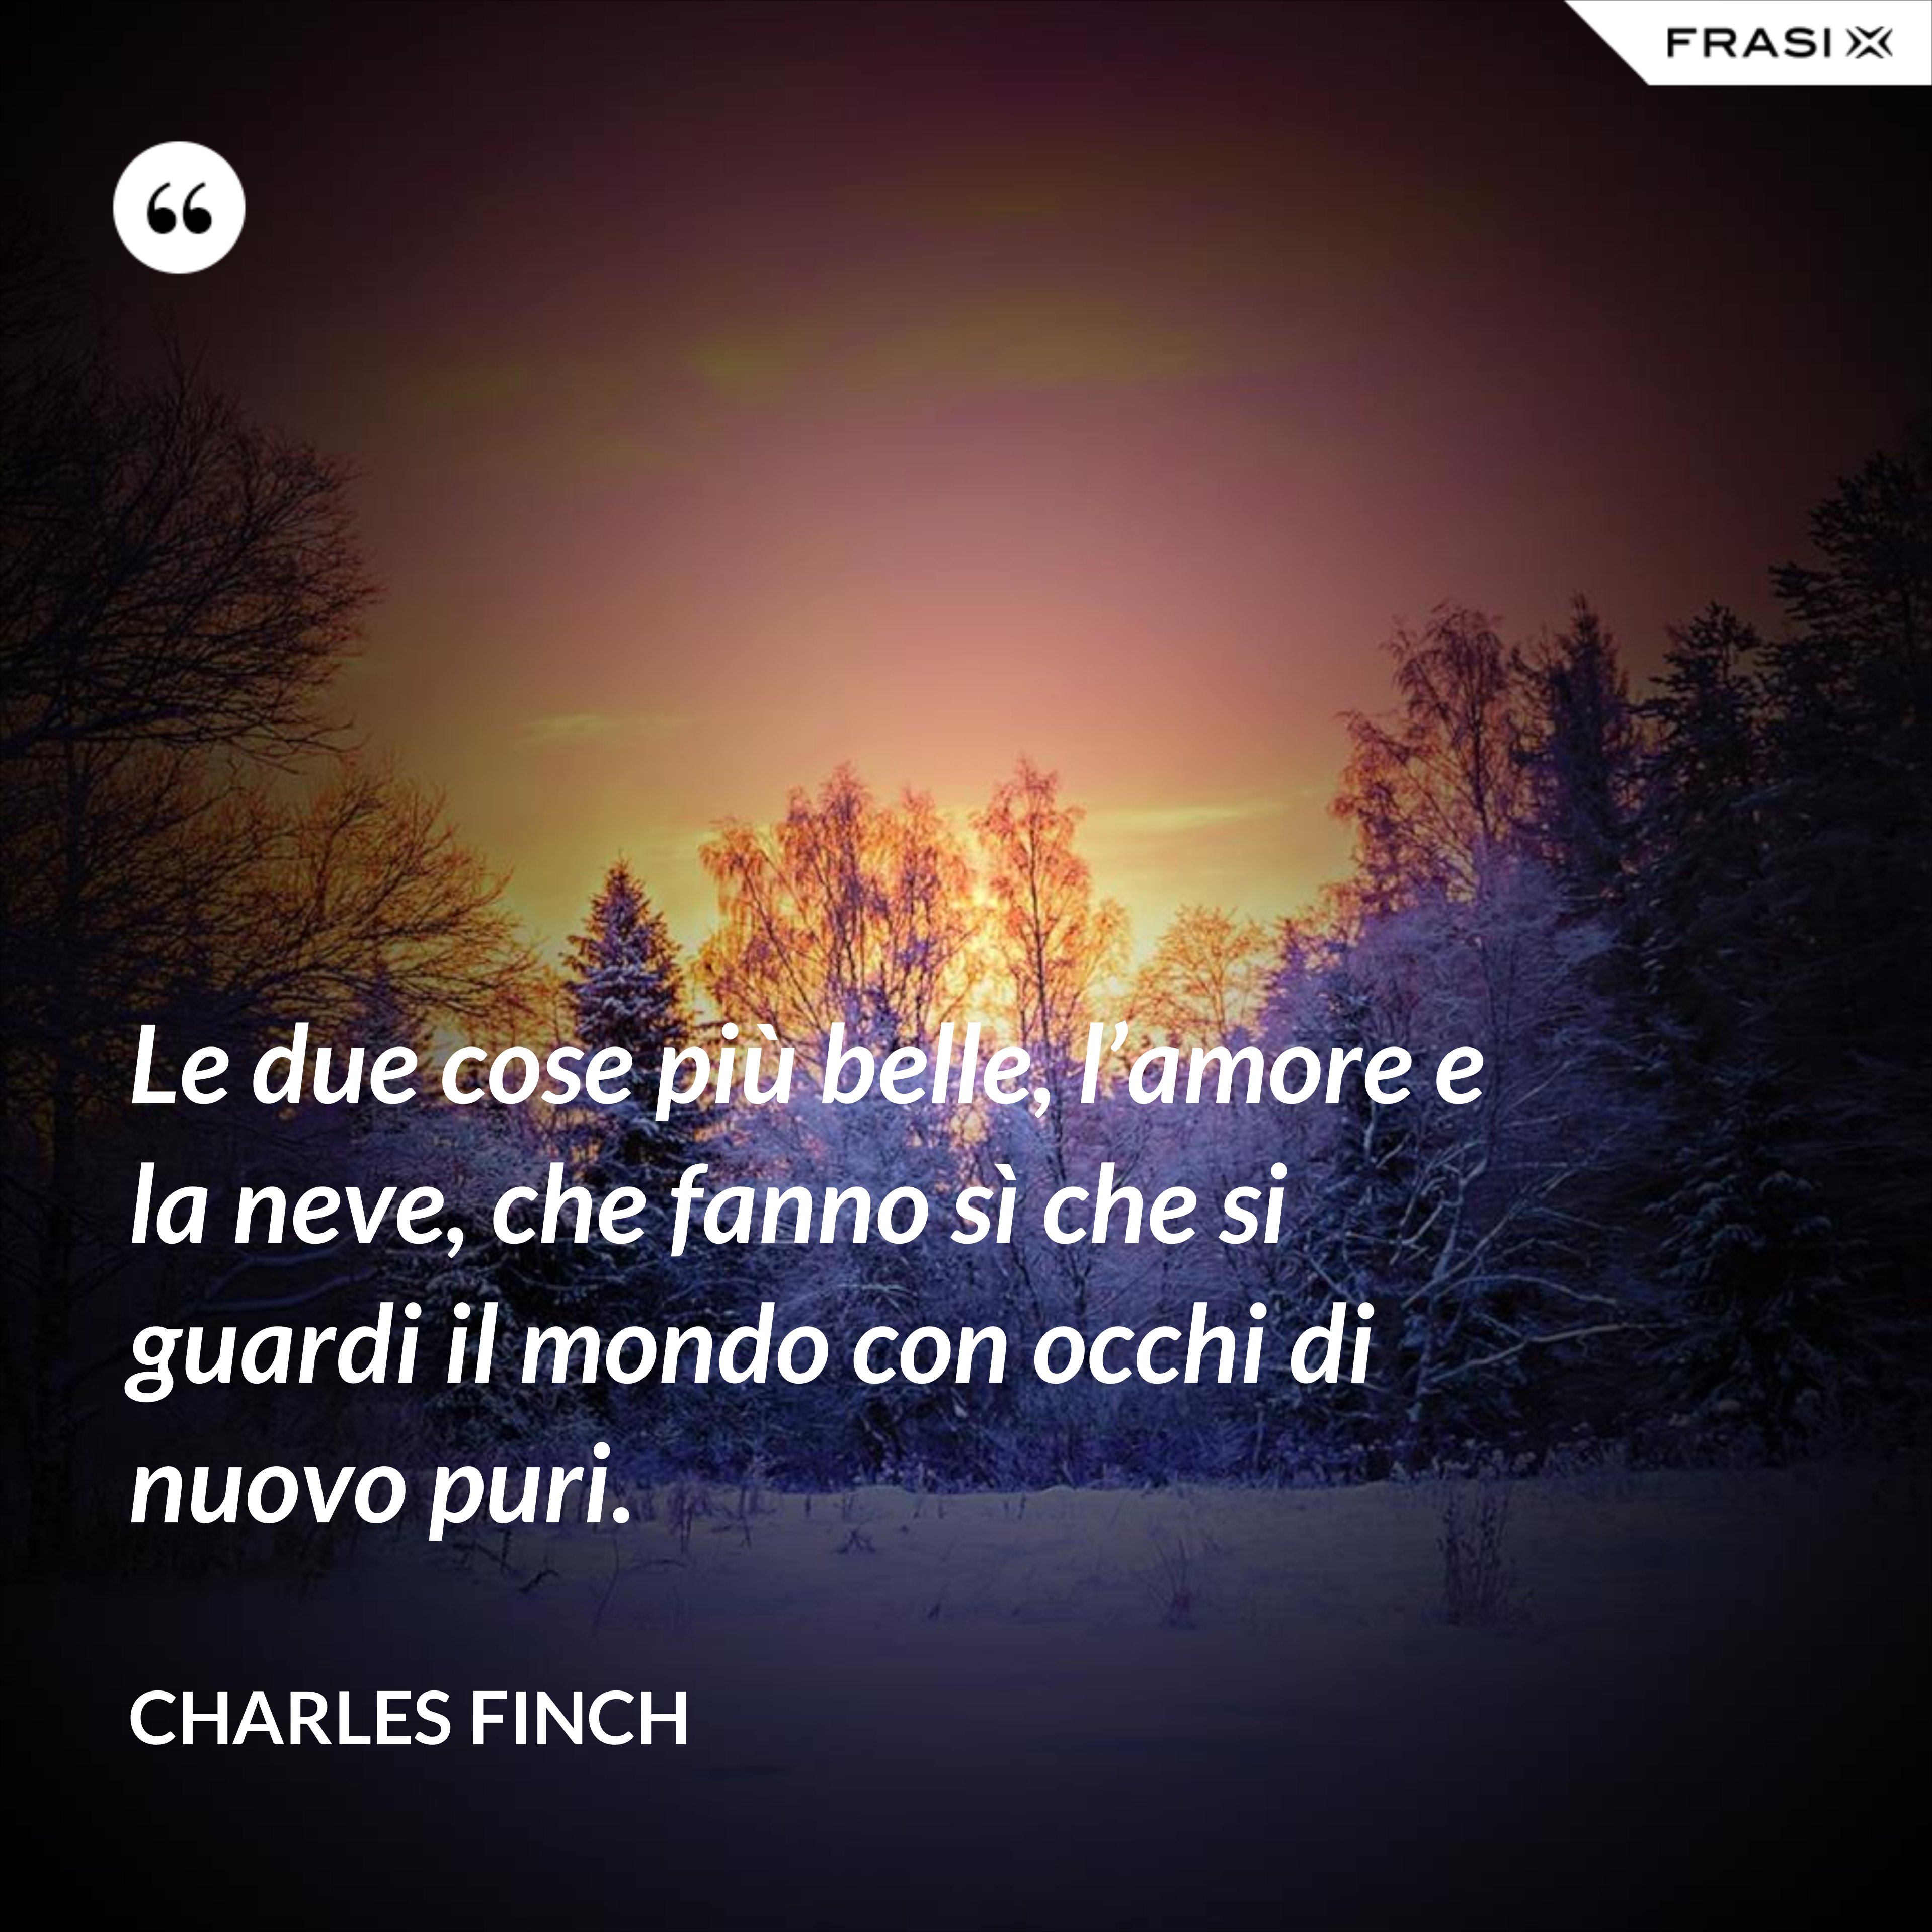 Le due cose più belle, l’amore e la neve, che fanno sì che si guardi il mondo con occhi di nuovo puri. - Charles Finch